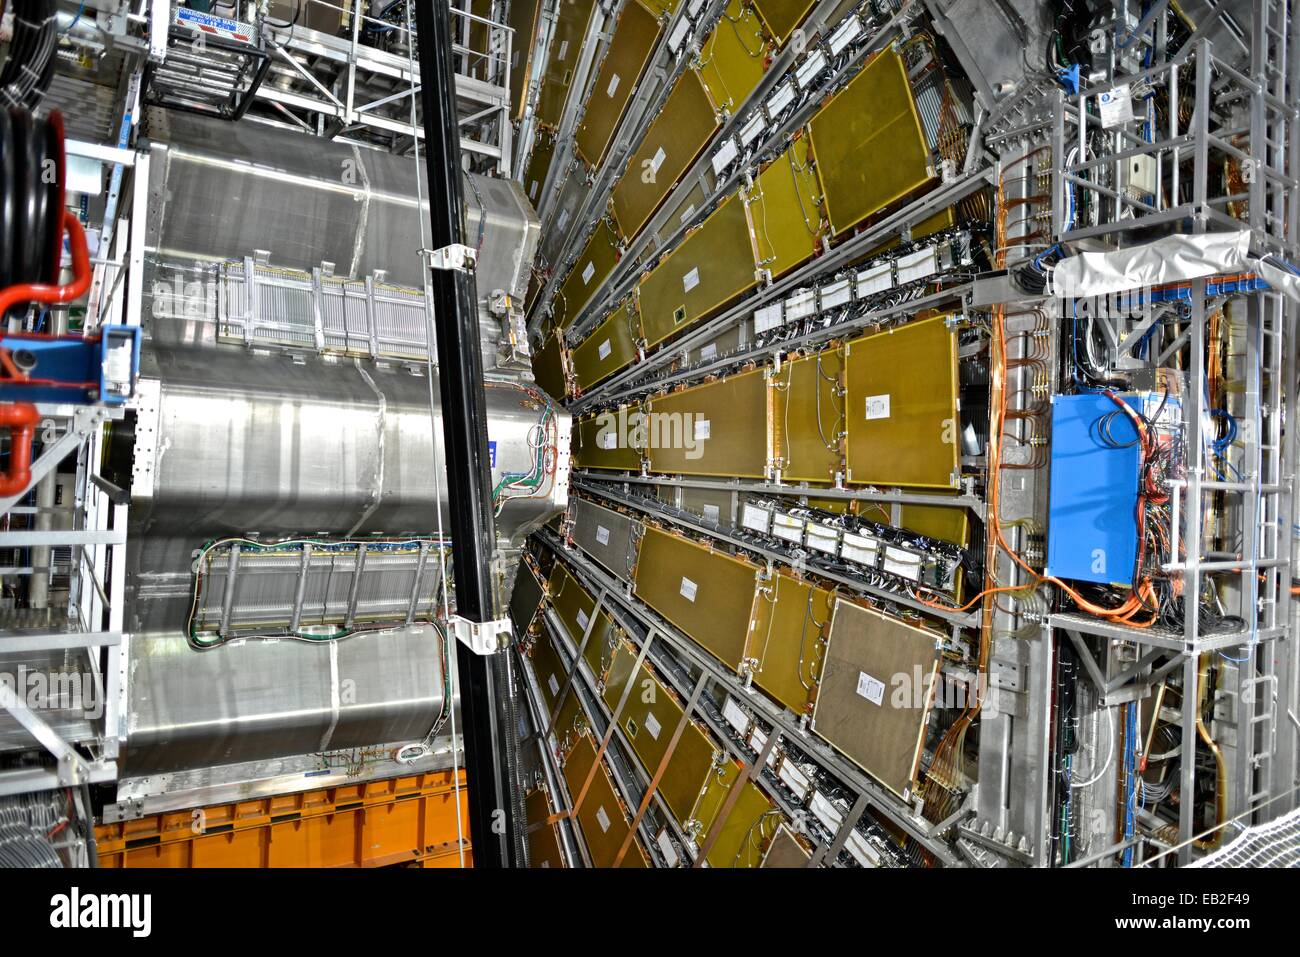 La Caverna di ATLAS, situato a 92 metri sotto terra, trattiene il Large Hadron Collider, un acceleratore di particelle presso l'Organizzazione europea per la ricerca nucleare. Foto Stock